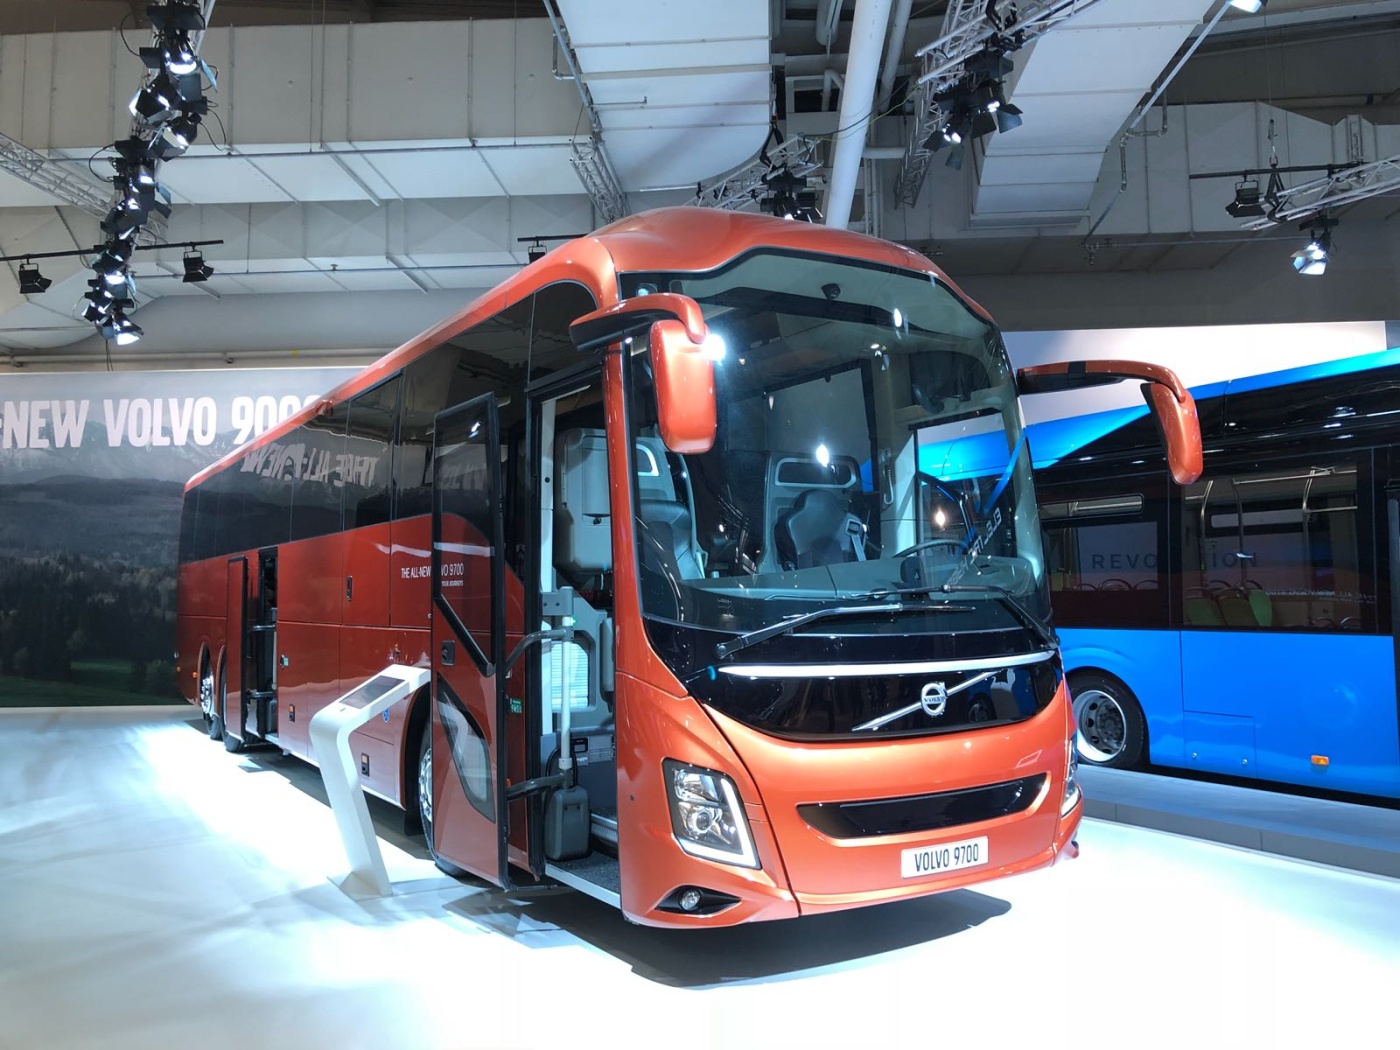 Slideshow Bild - Der Volvo 9700 ist als Vertreter der neuen Reisebus-Generation mit einer Motorleistung von bis zu 460 PS (338 kW) erhältlich.